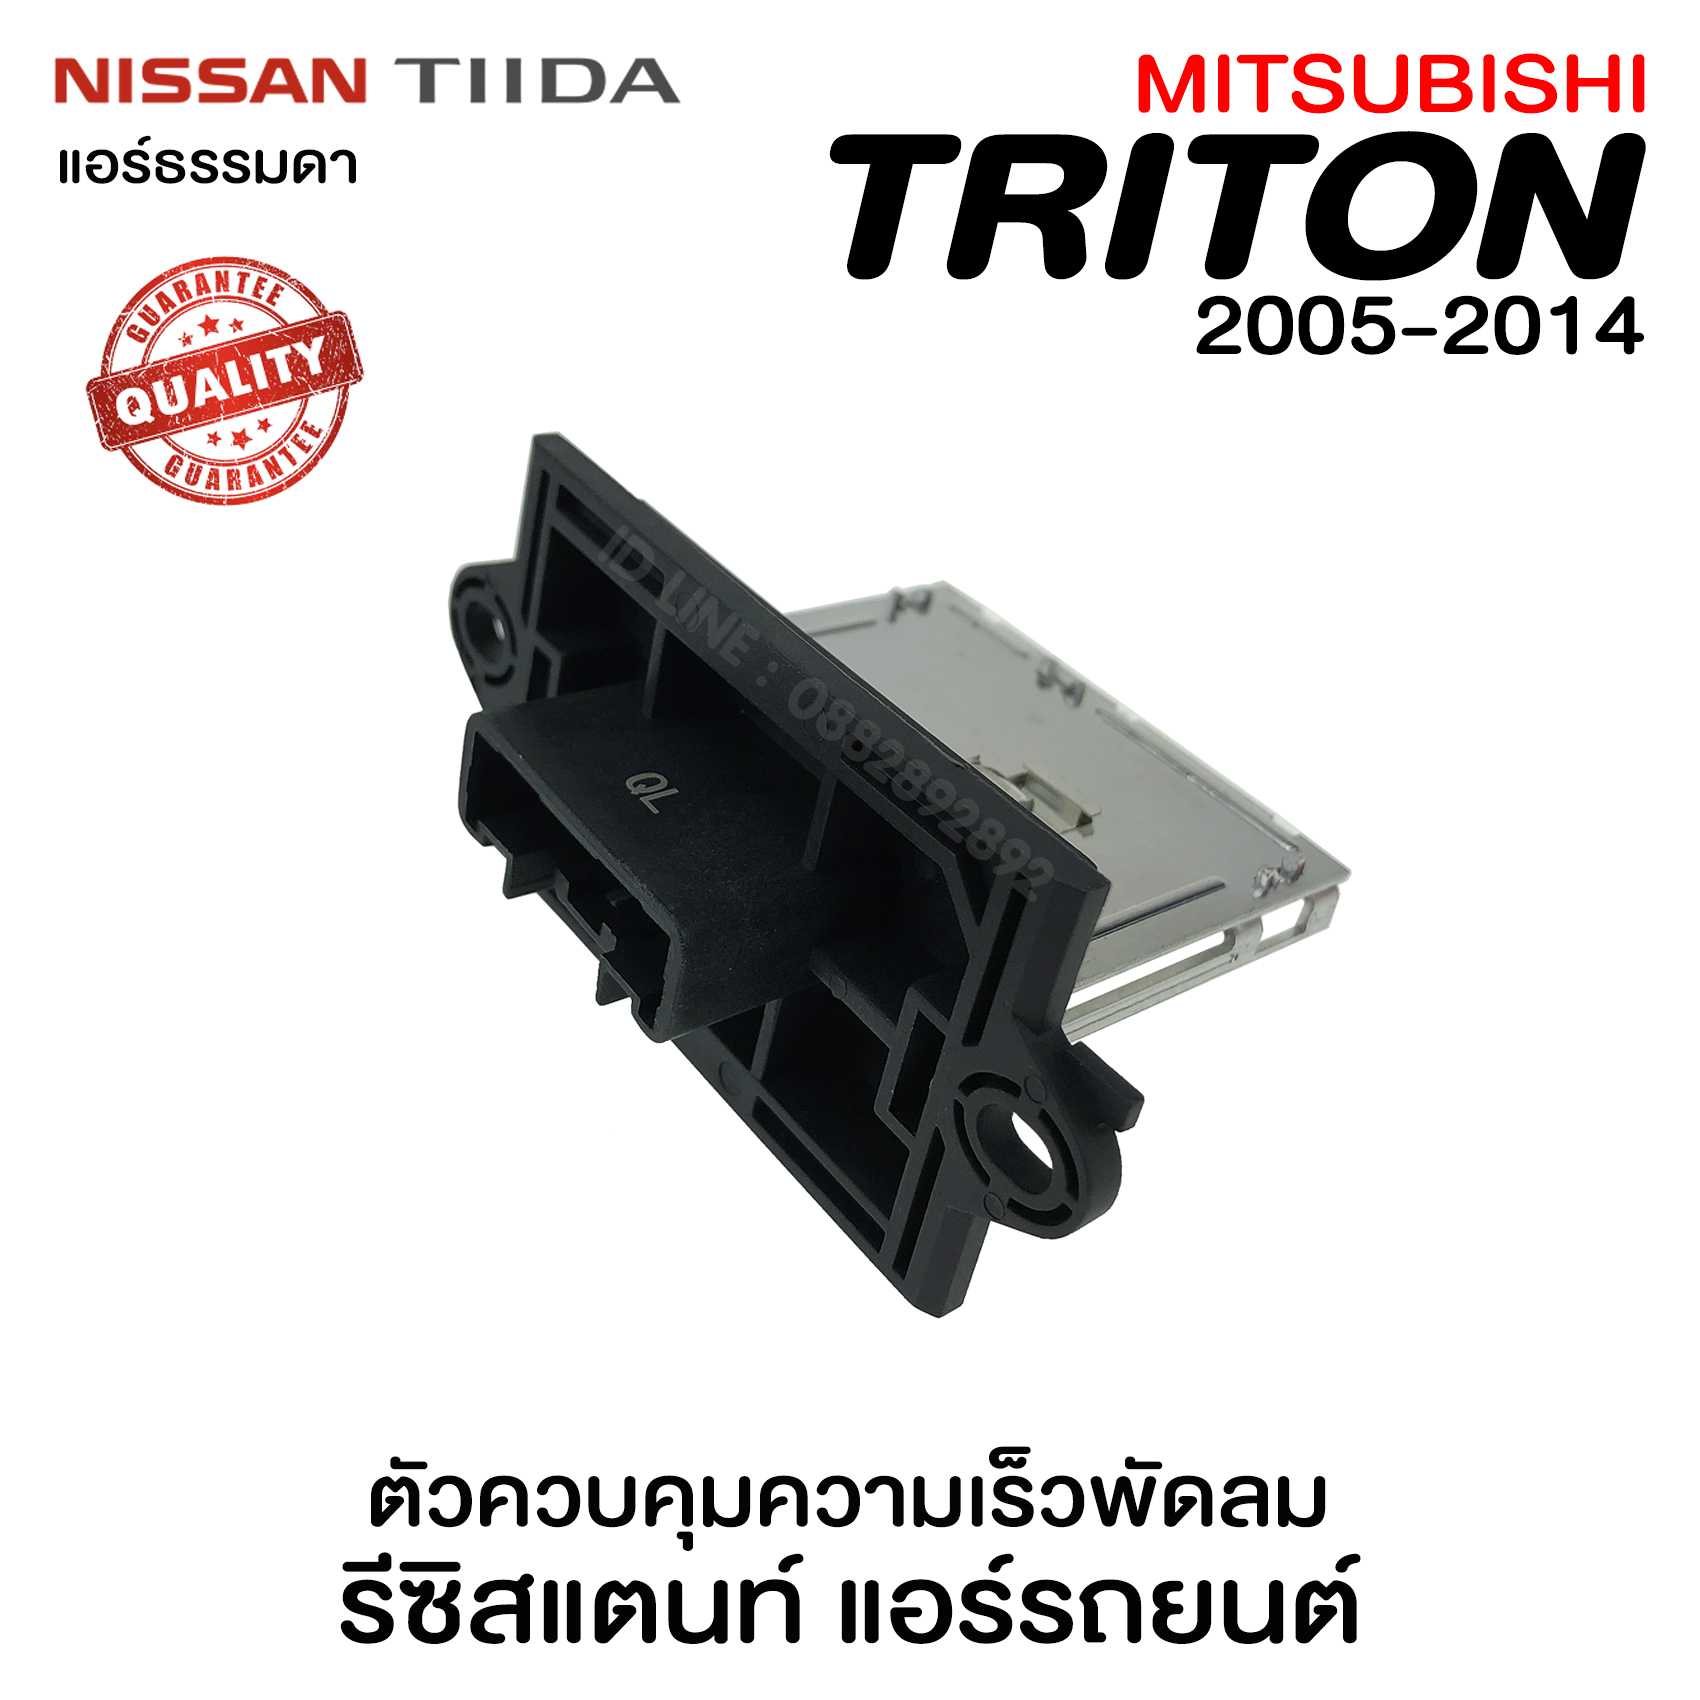 รีซิสแตนท์ มิตซูบิชิ ไทรทัน Triton'05-14 , Nissan Tida (แอร์ธรรมดา) รีซิสเตอร์ ตัวควบคุมความเร็วพัดลมแอร์  รีซิสเตอร์ รีซิสแตนท์แอร์